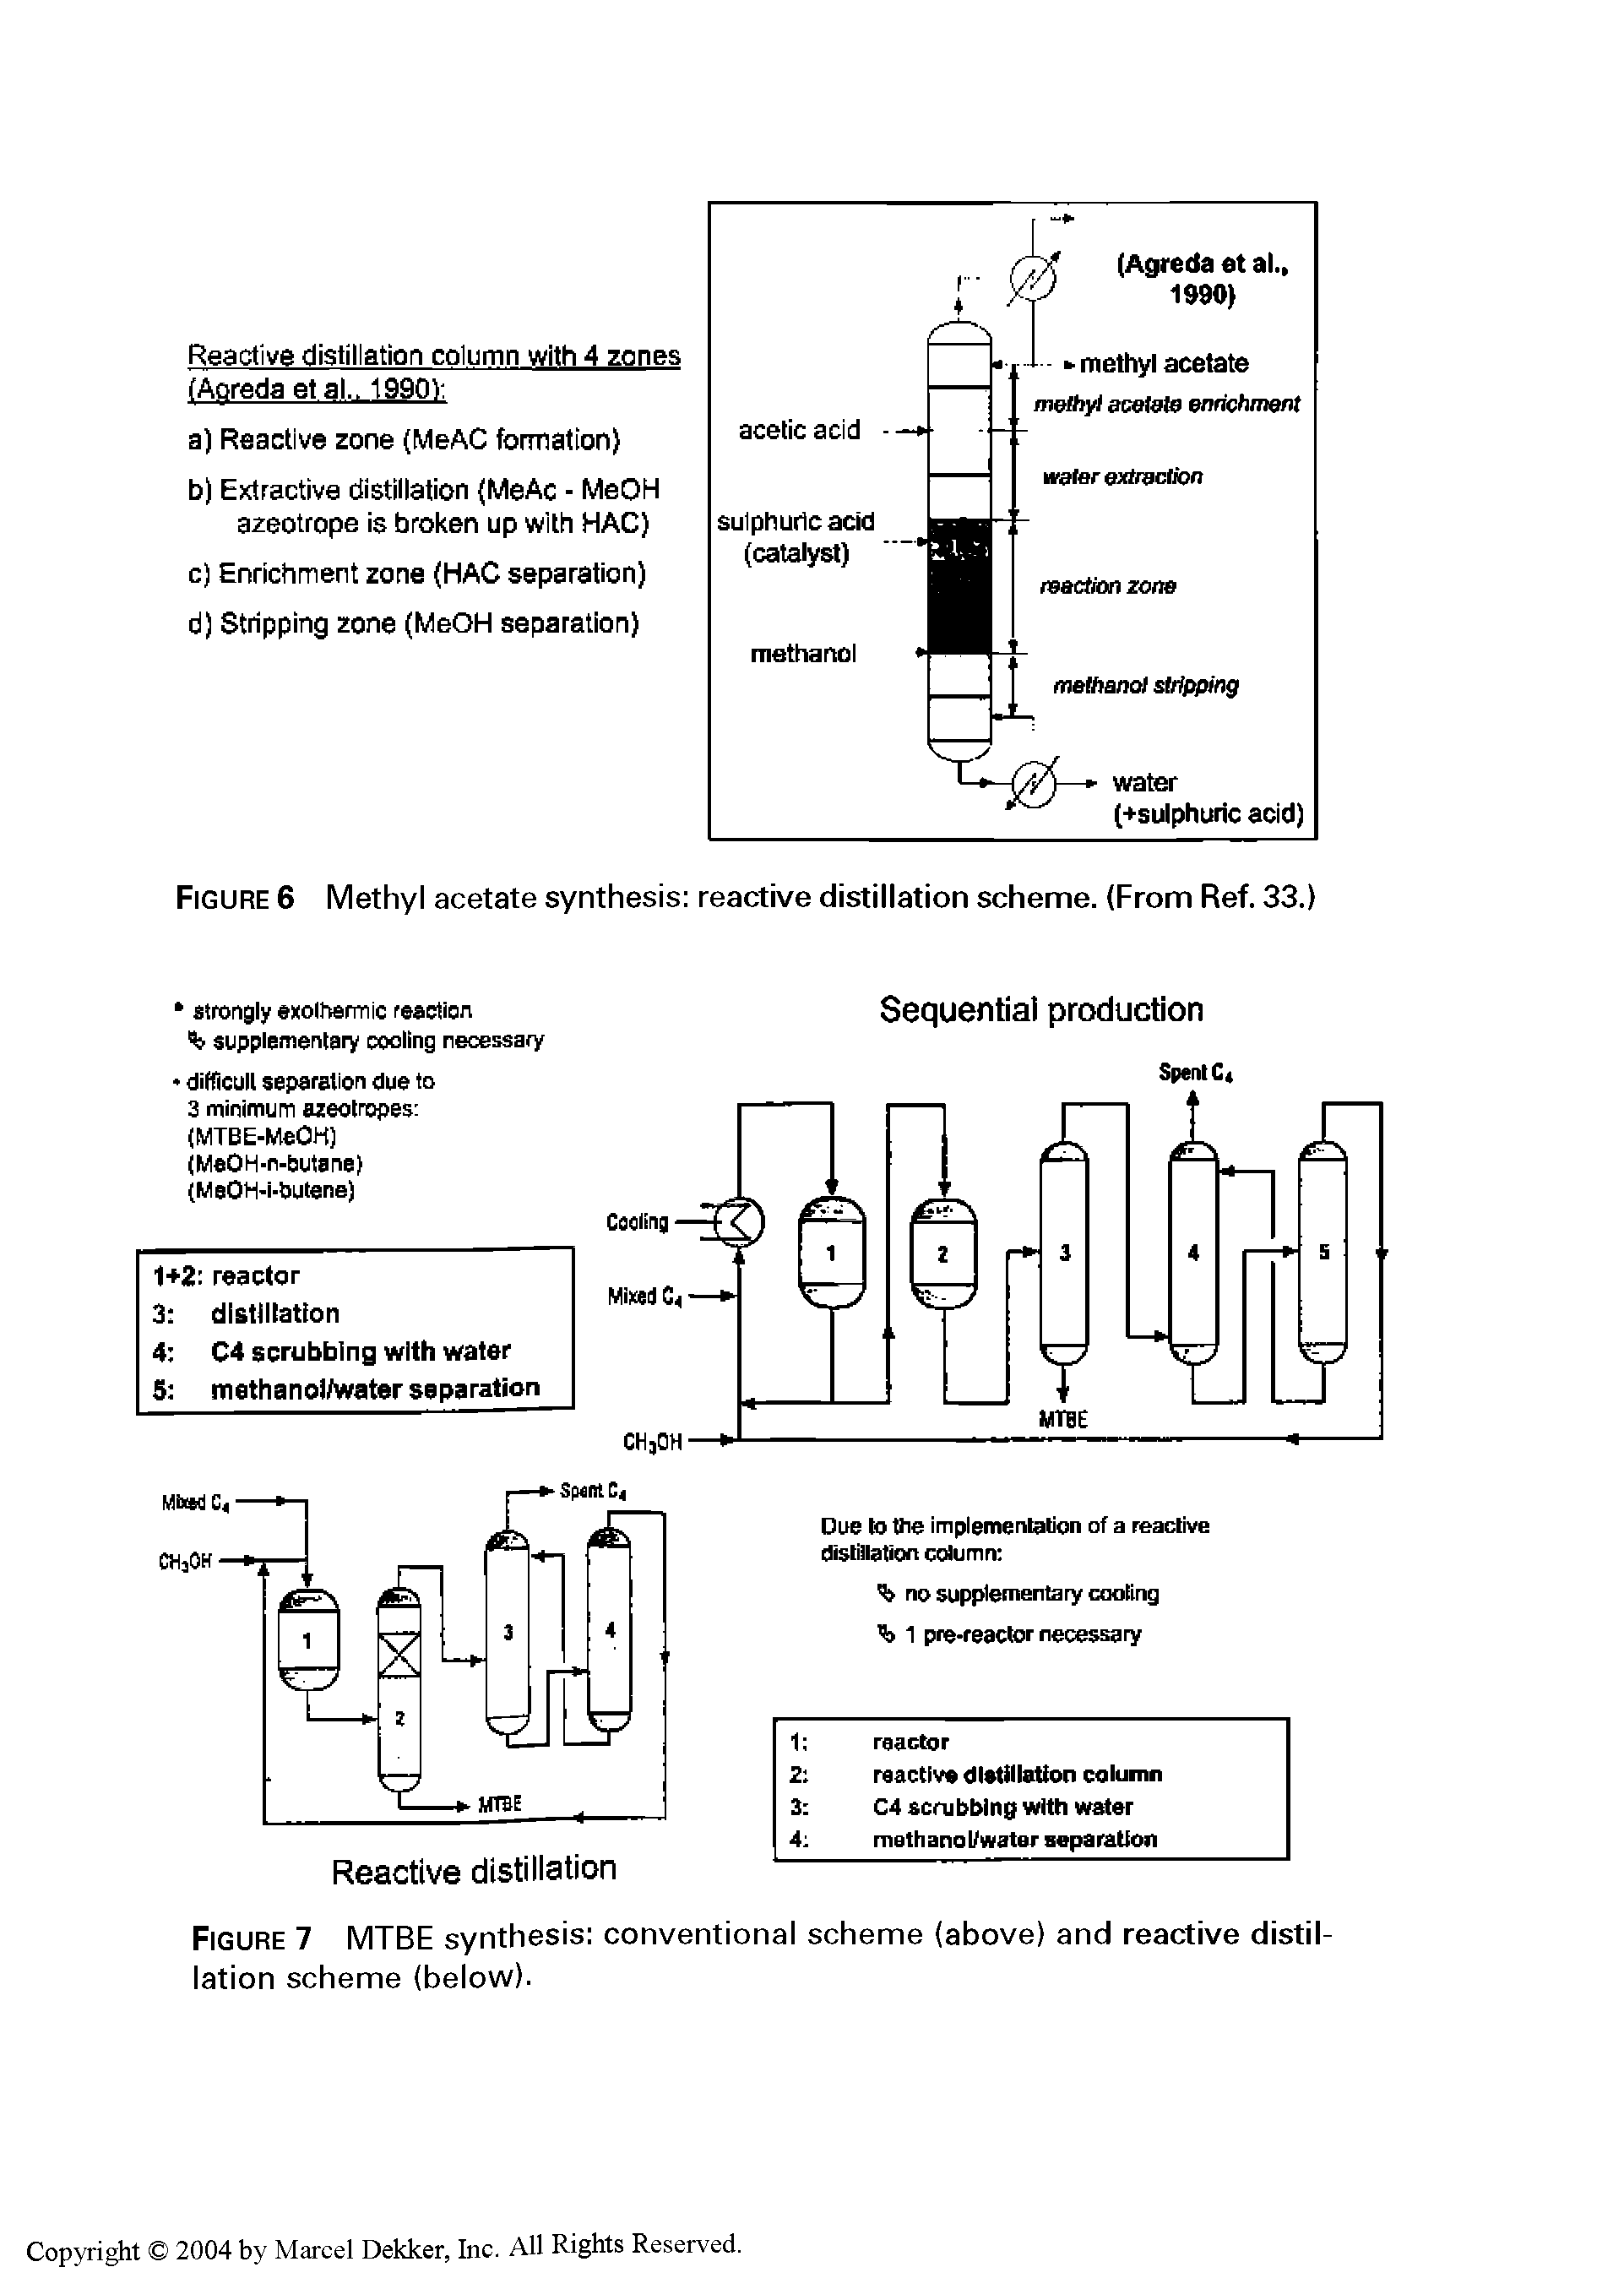 Figure 7 MTBE synthesis conventional scheme (above) and reactive distillation scheme (below).